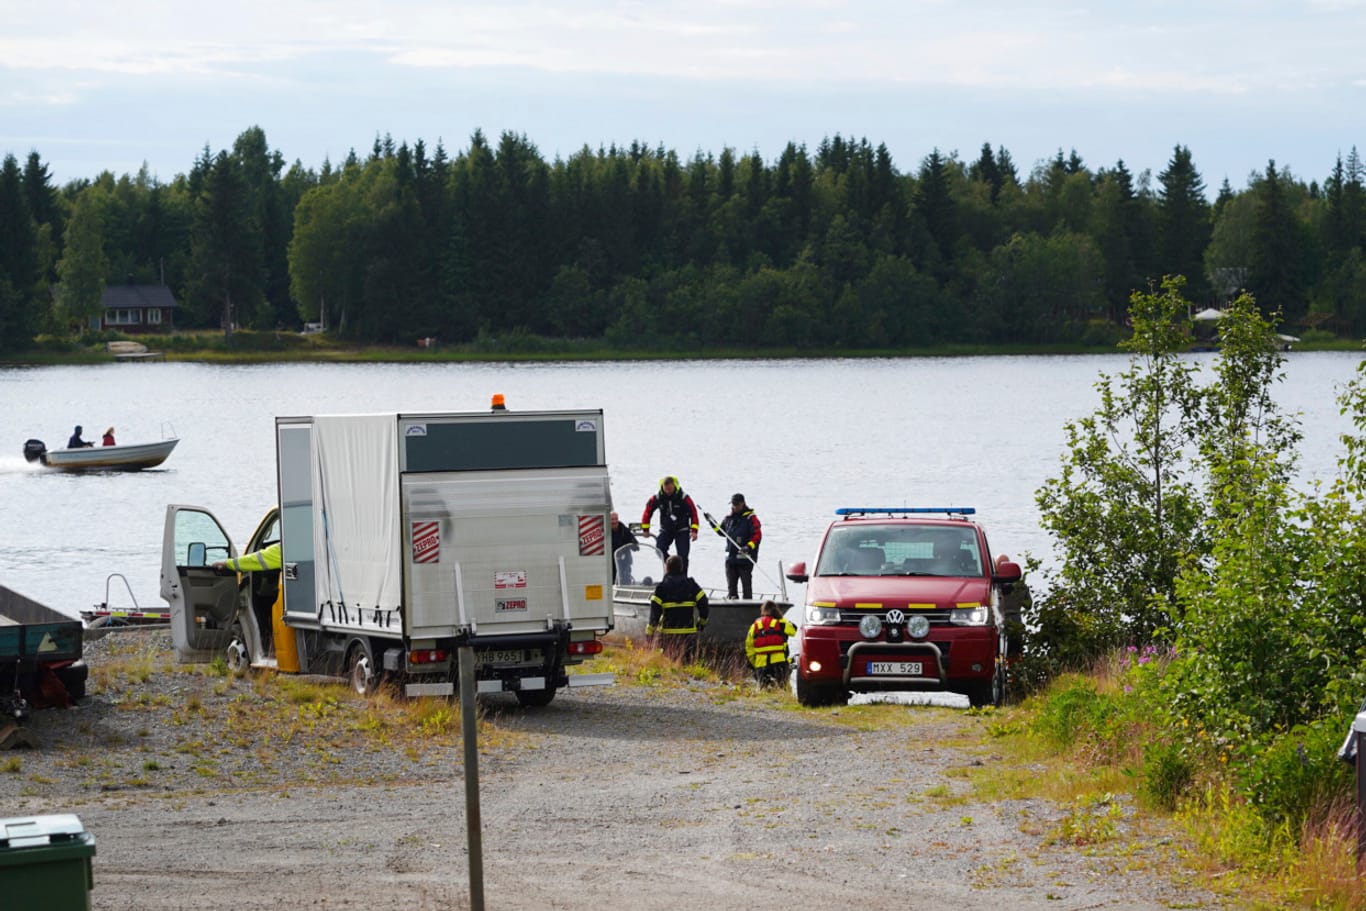 Umea in Nordschweden: Einsatzkräfte arbeiten nach dem Absturz eines Kleinflugzeugs an der Unfallstelle.